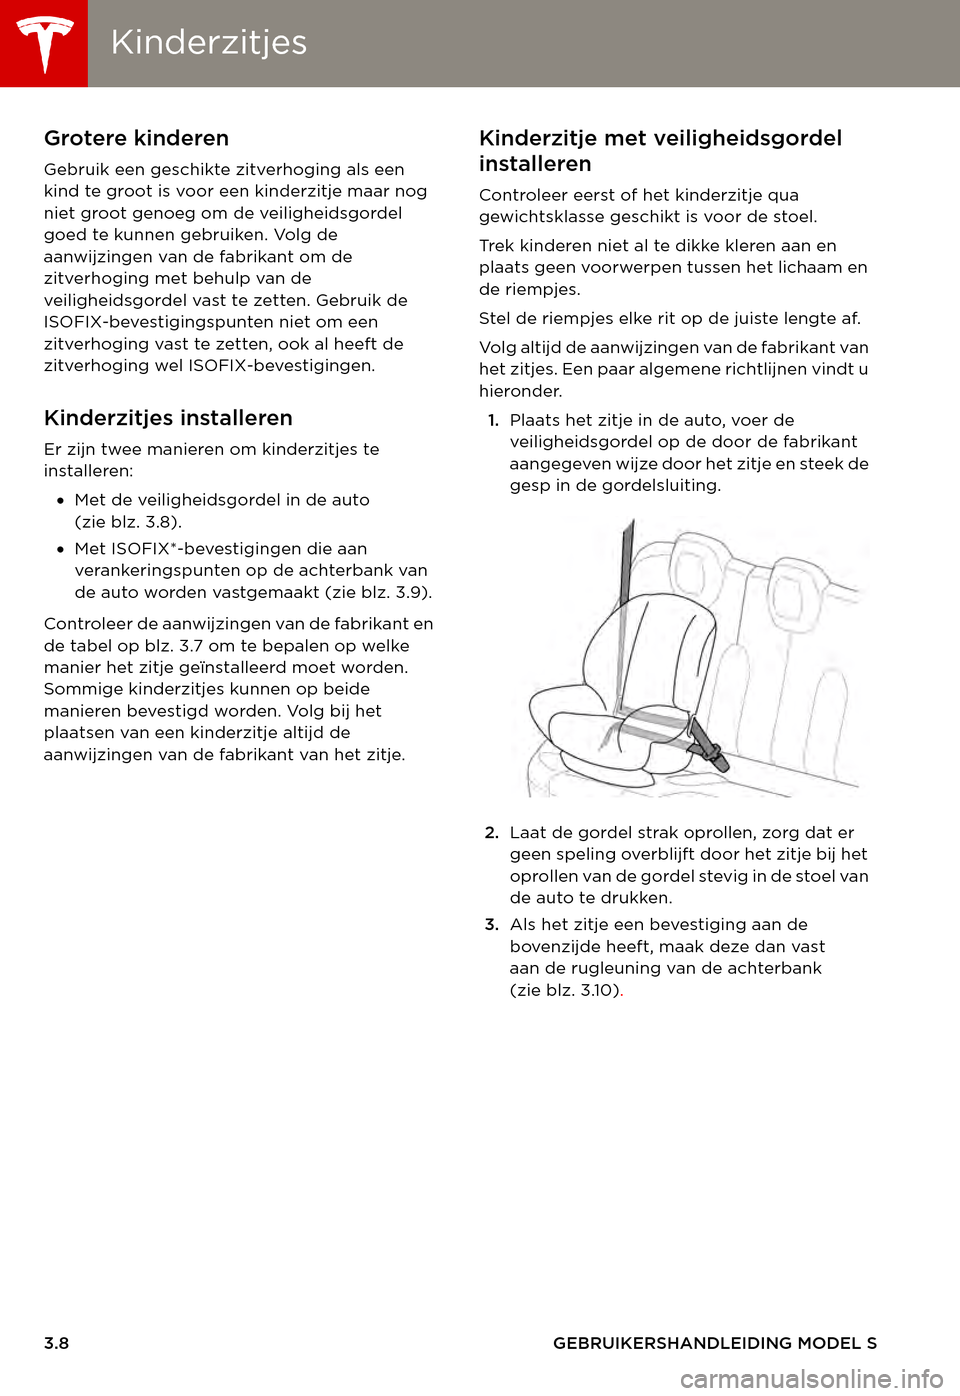 TESLA MODEL S 2015  Handleiding (in Dutch) KinderzitjesKinderzitjes
3.8GEBRUIKERSHANDLEIDING MODEL S
Grotere kinderen
Gebruik een geschikte zitverhoging als een kind te groot is voor een kinderzitje maar nog niet groot genoeg om de veiligheids